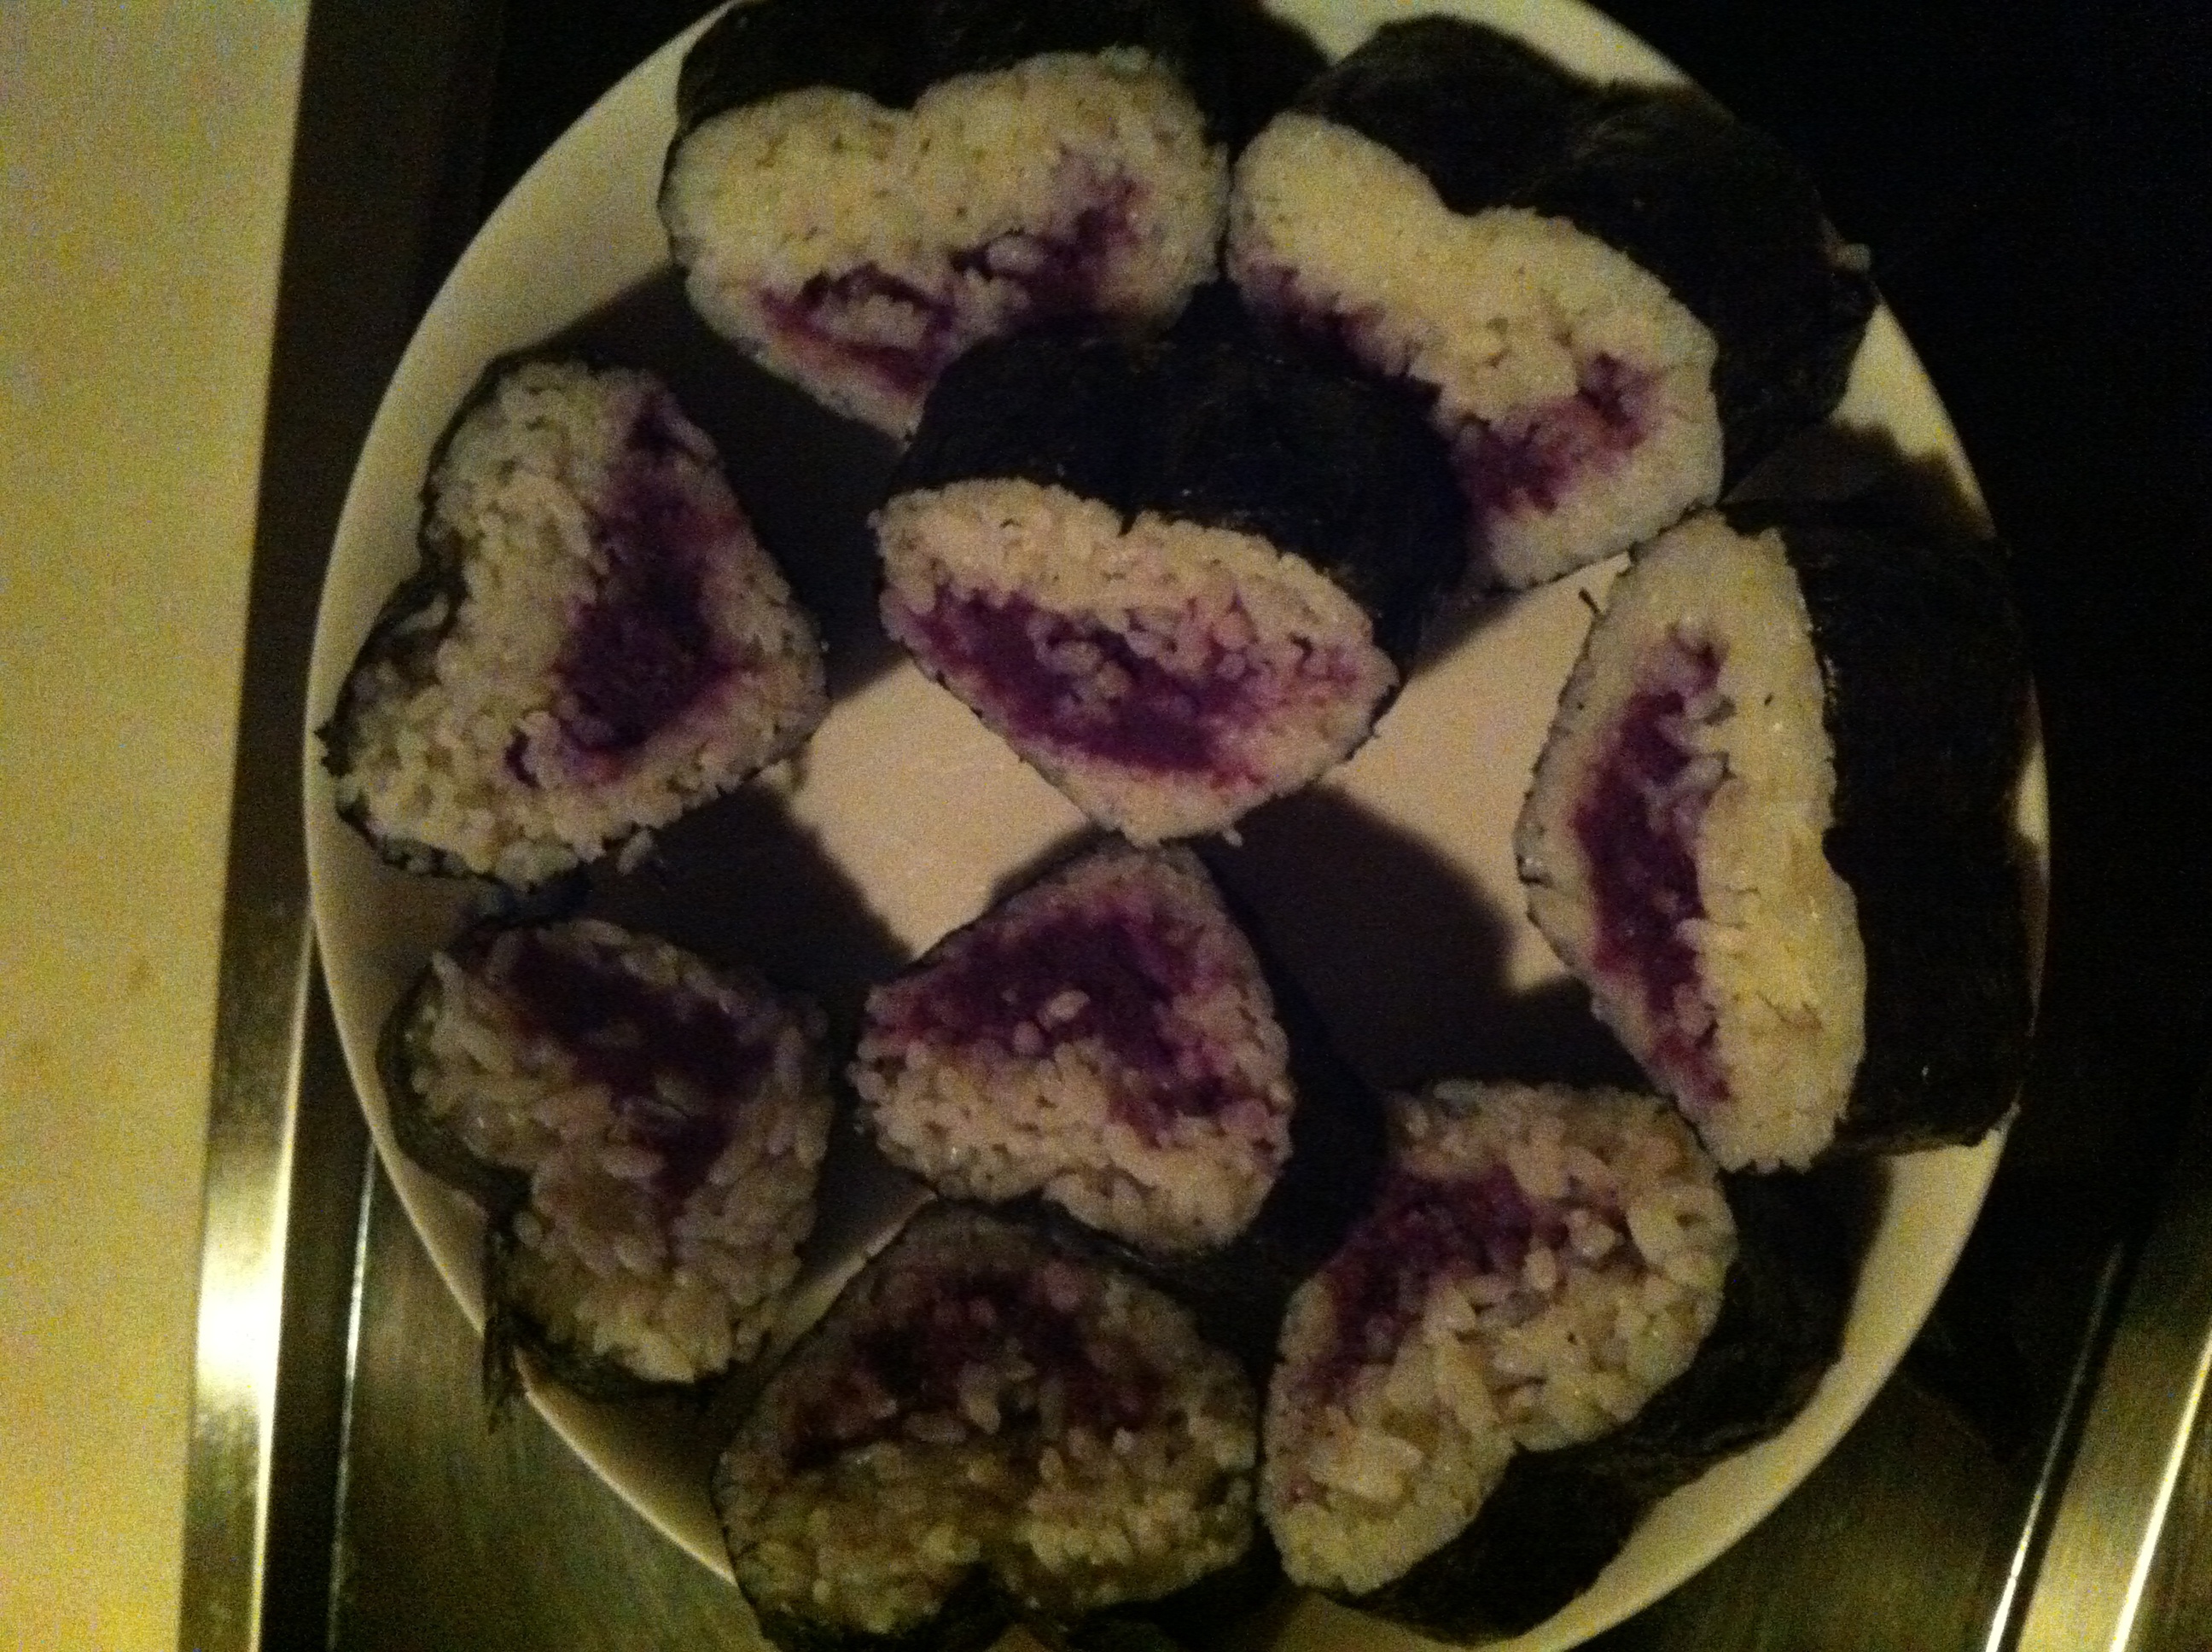 韩式紫菜包饭